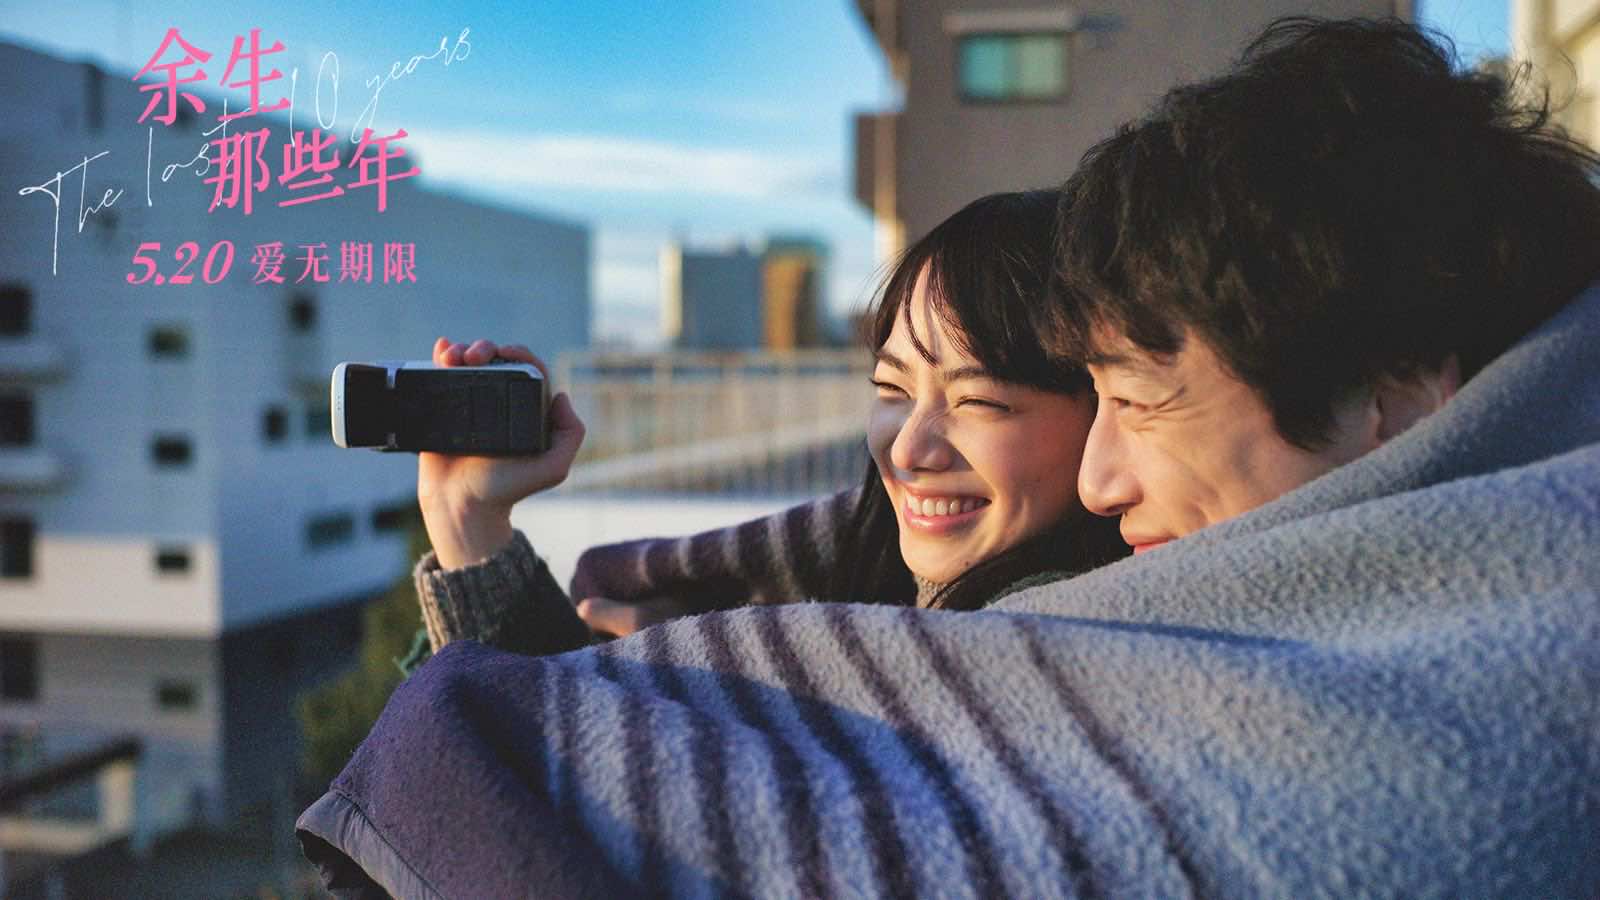 《余生那些年》5.20浪漫观影首选 小松菜奈坂口健太郎等你见面